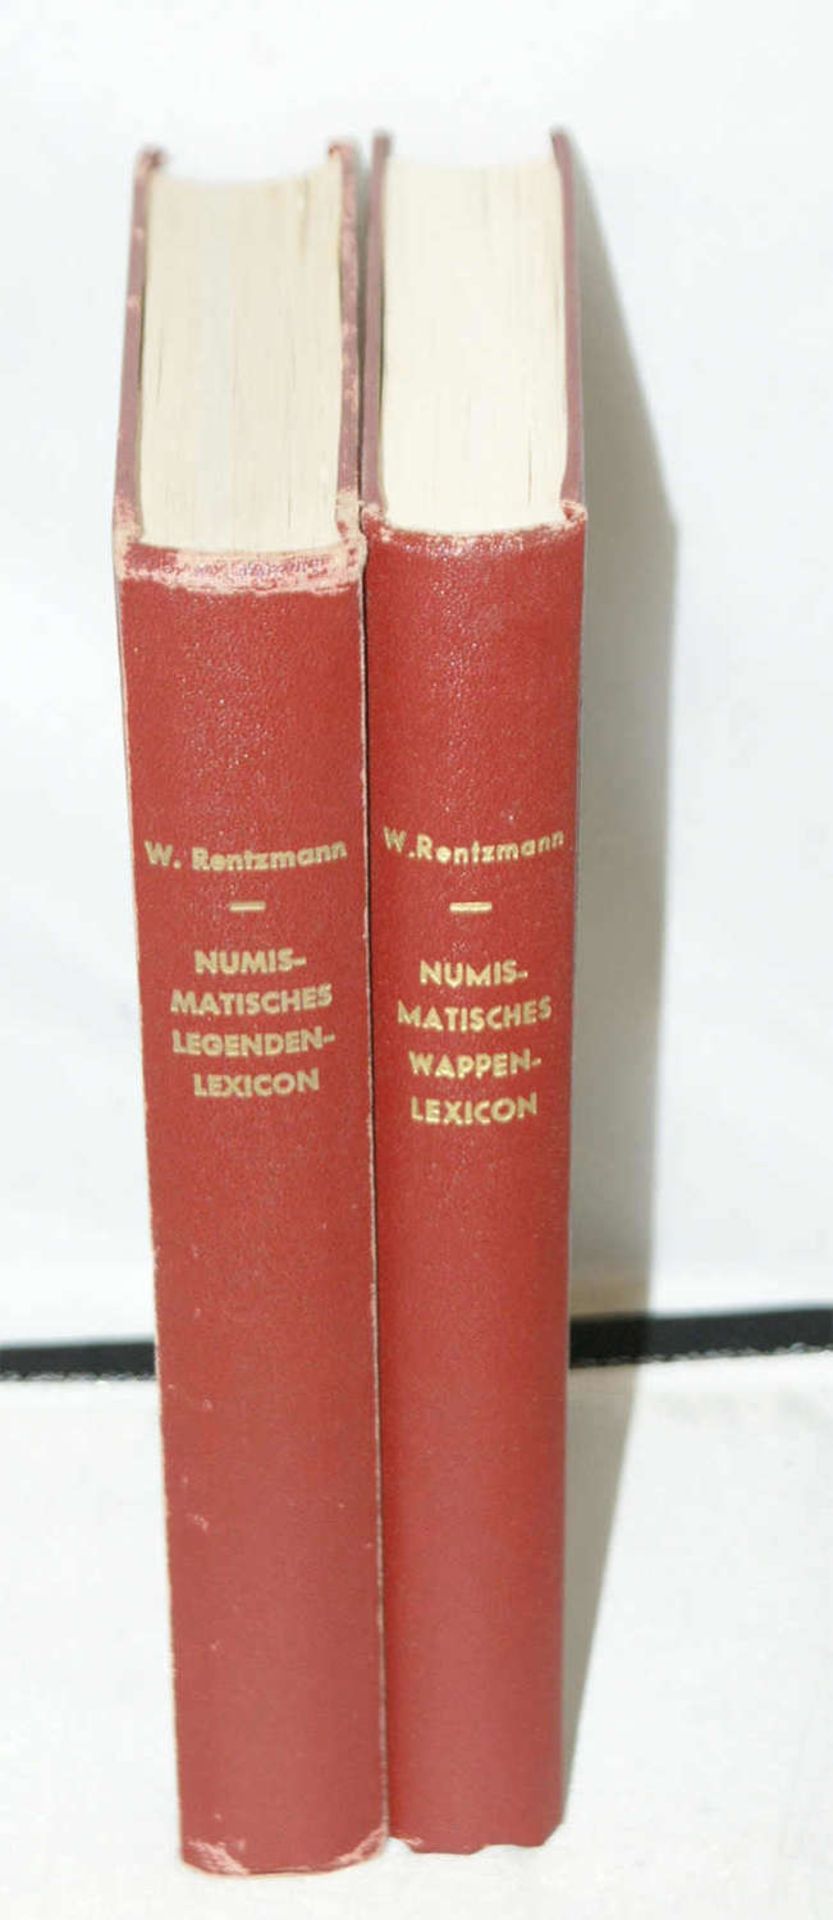 2 Bücher - 1x Numismatisches Legenden-Lexicon des Mittelalters und der Neuzeit, 1. Teil, Nachdruck